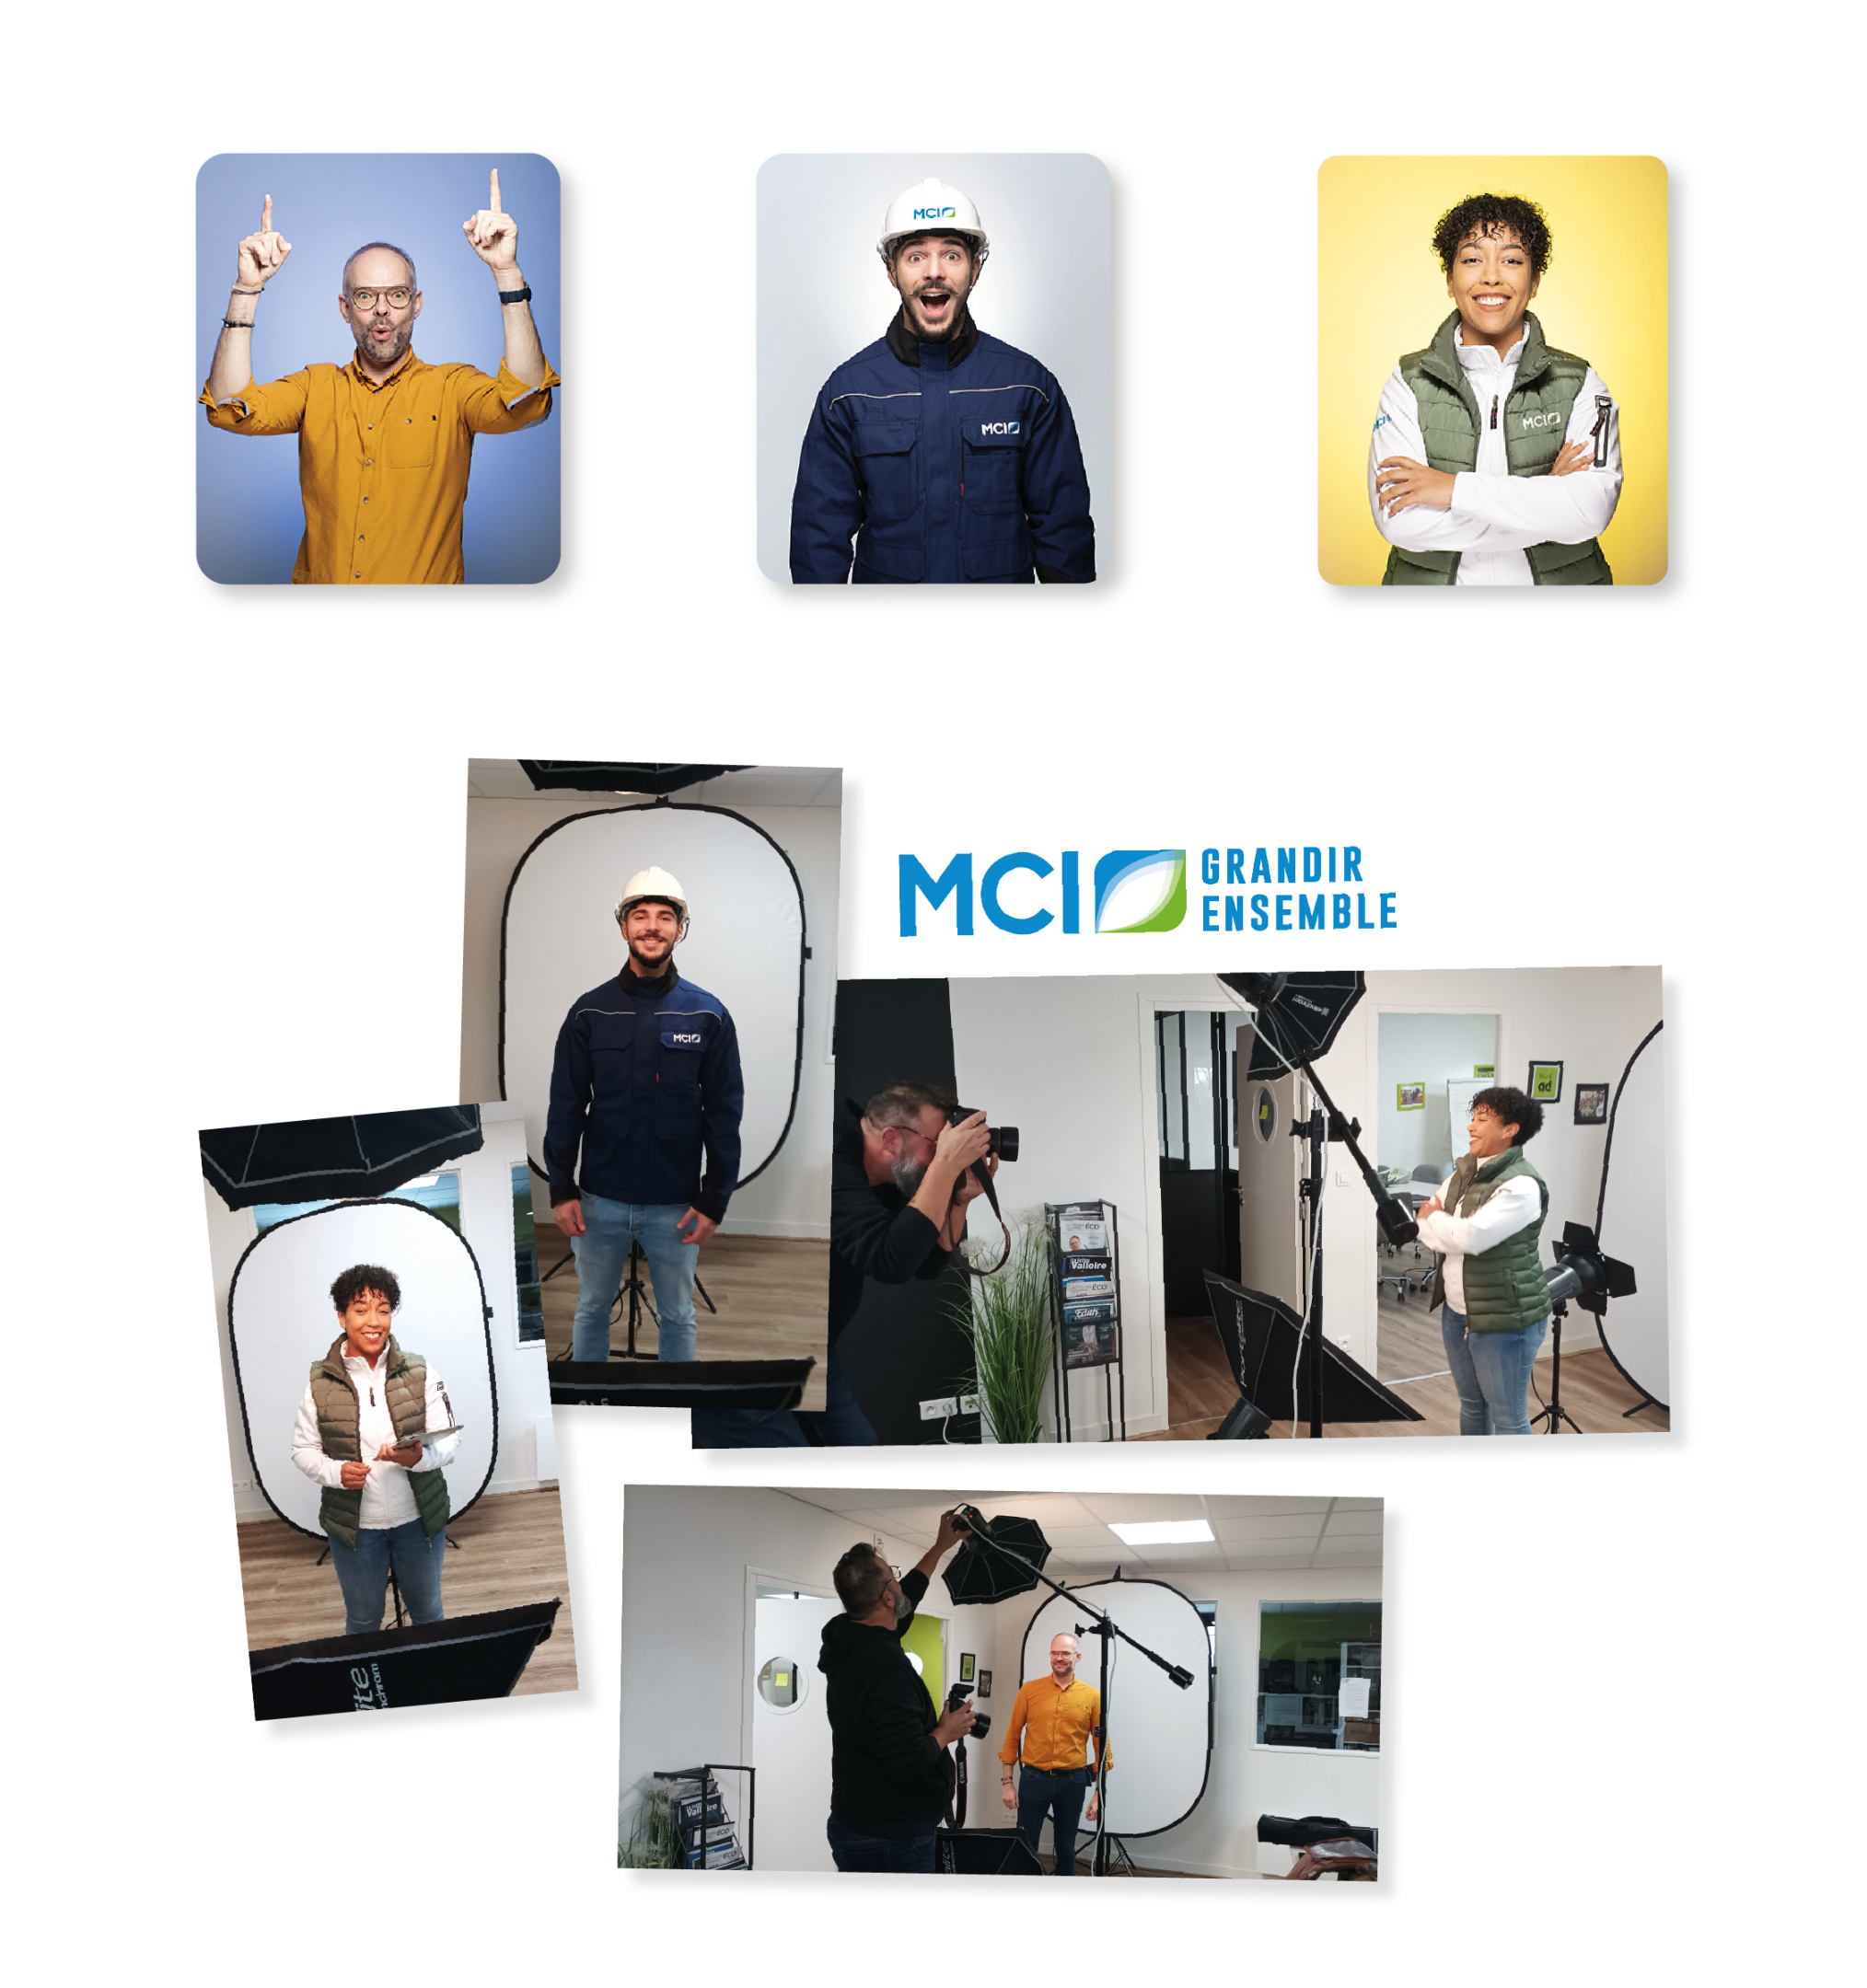 MCI - Campagne marque employeur réseaux sociaux Image 3